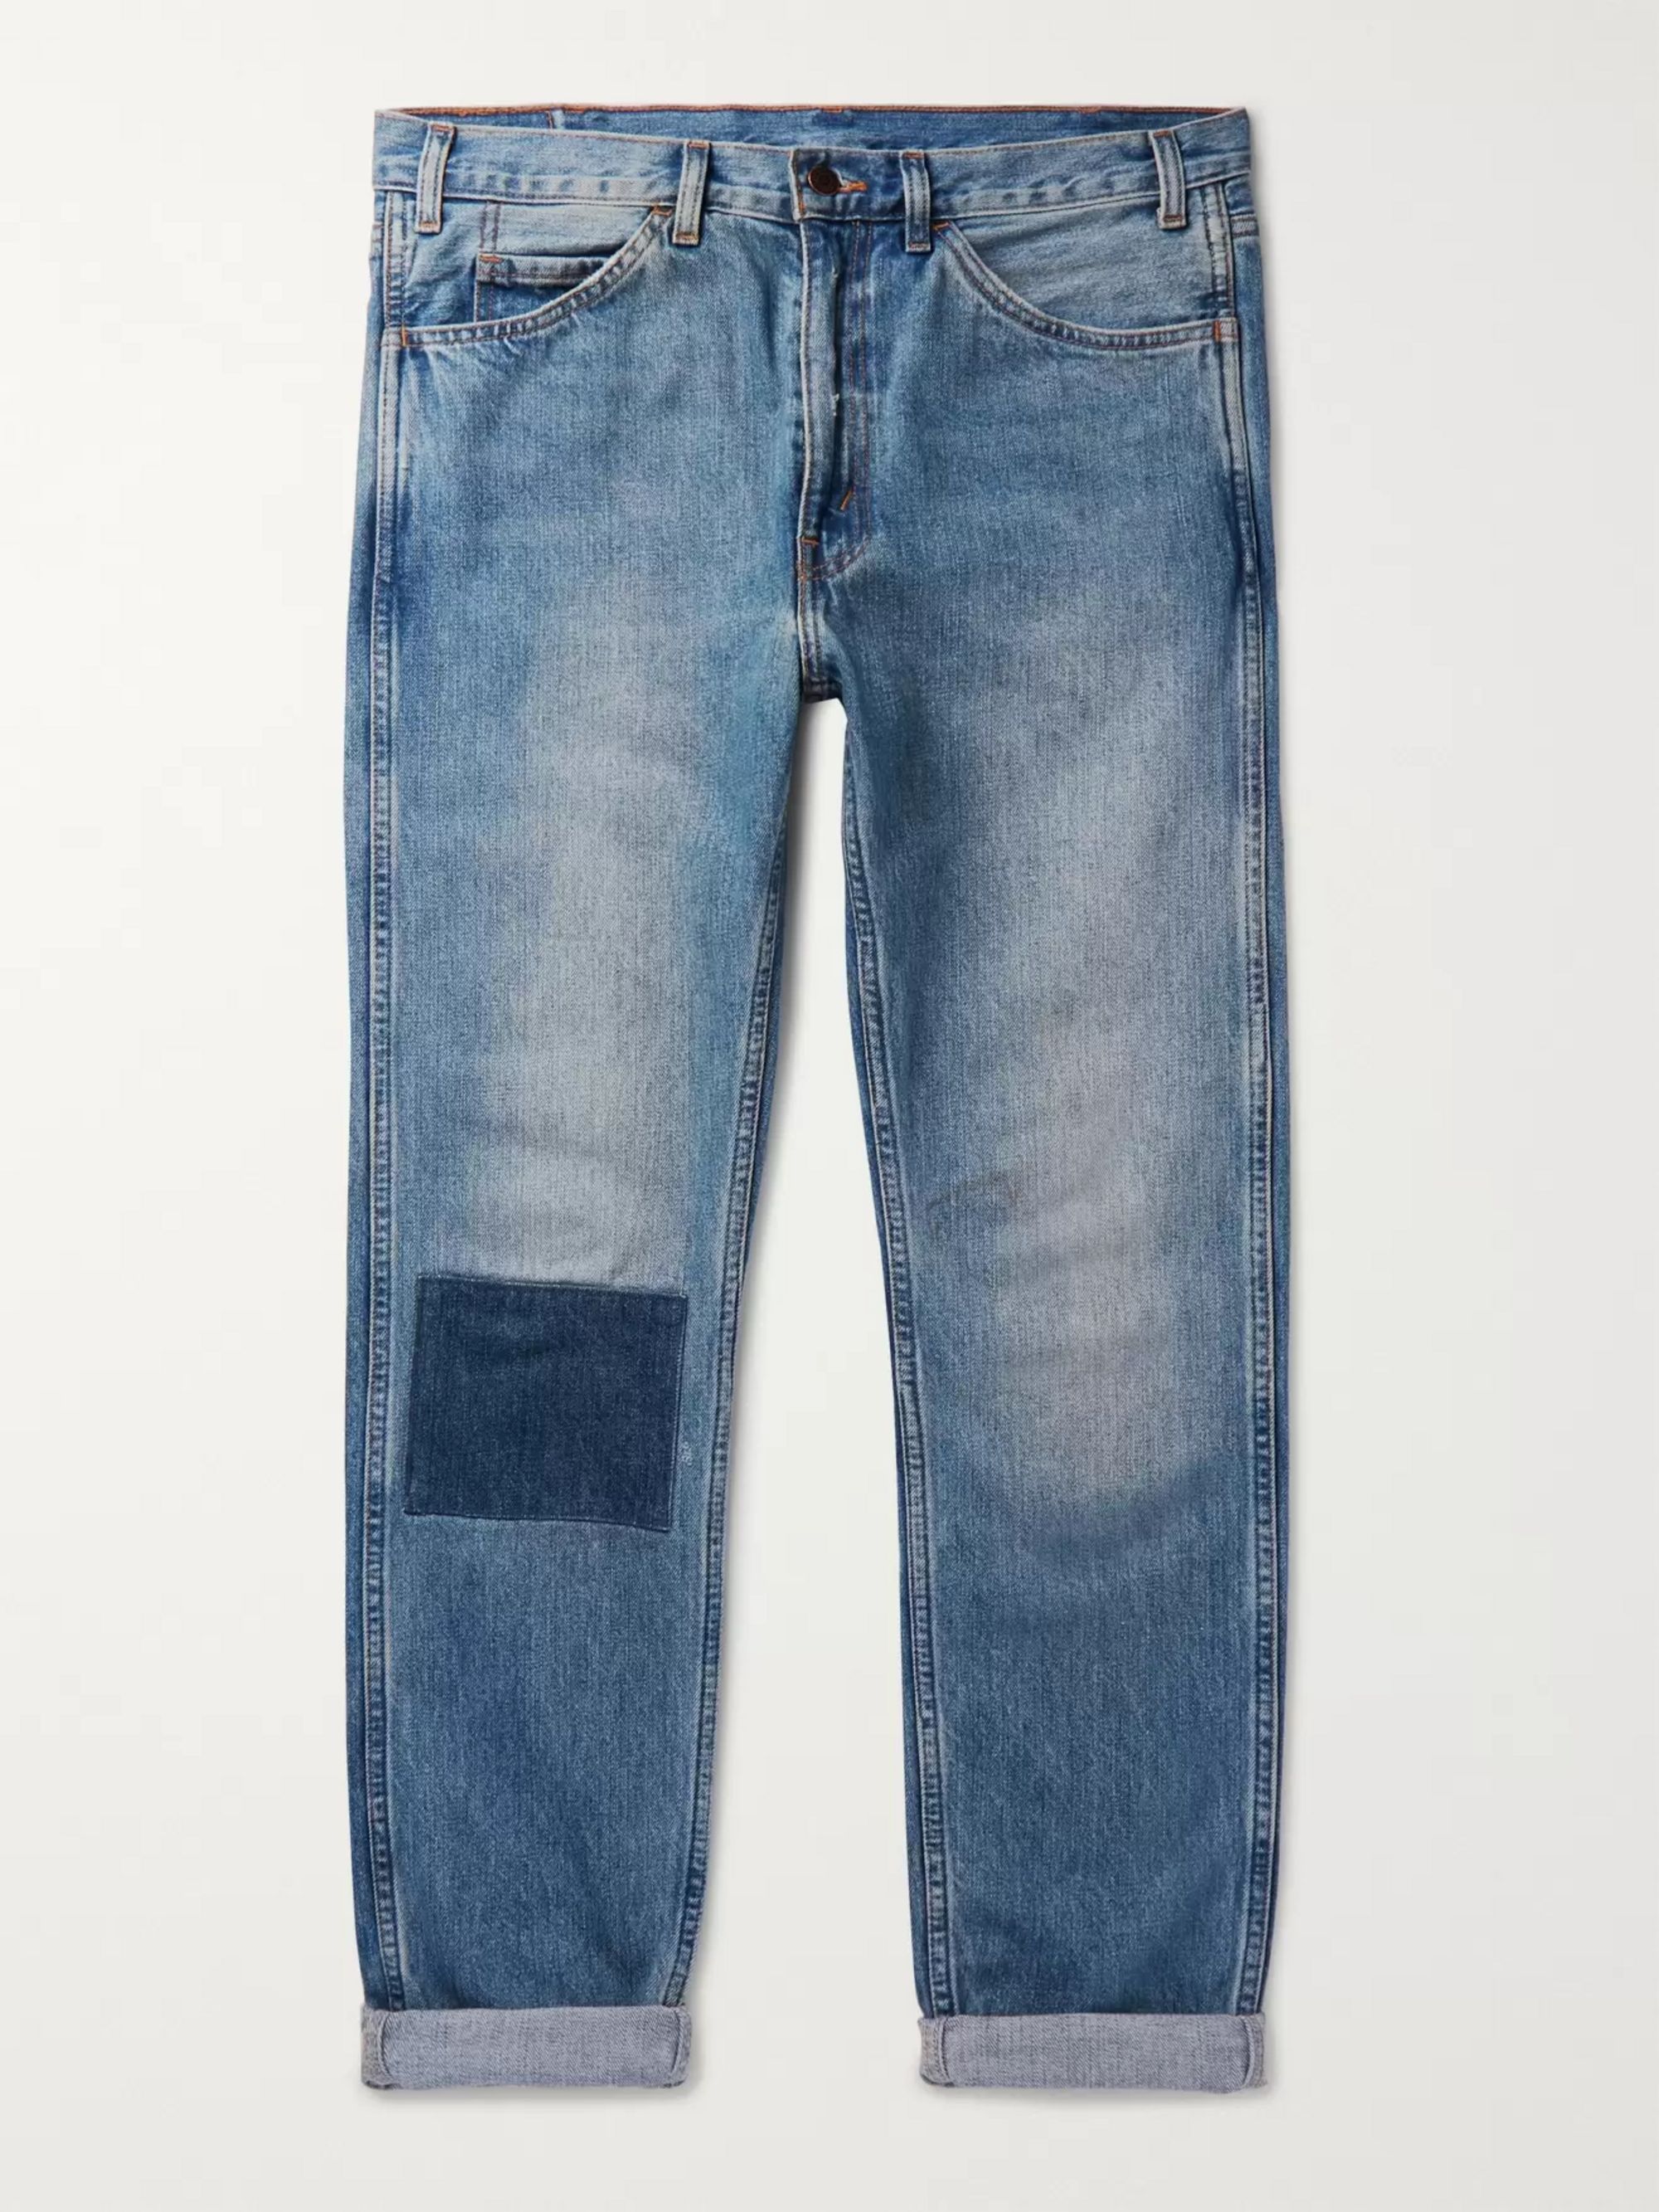 blue jeans levis